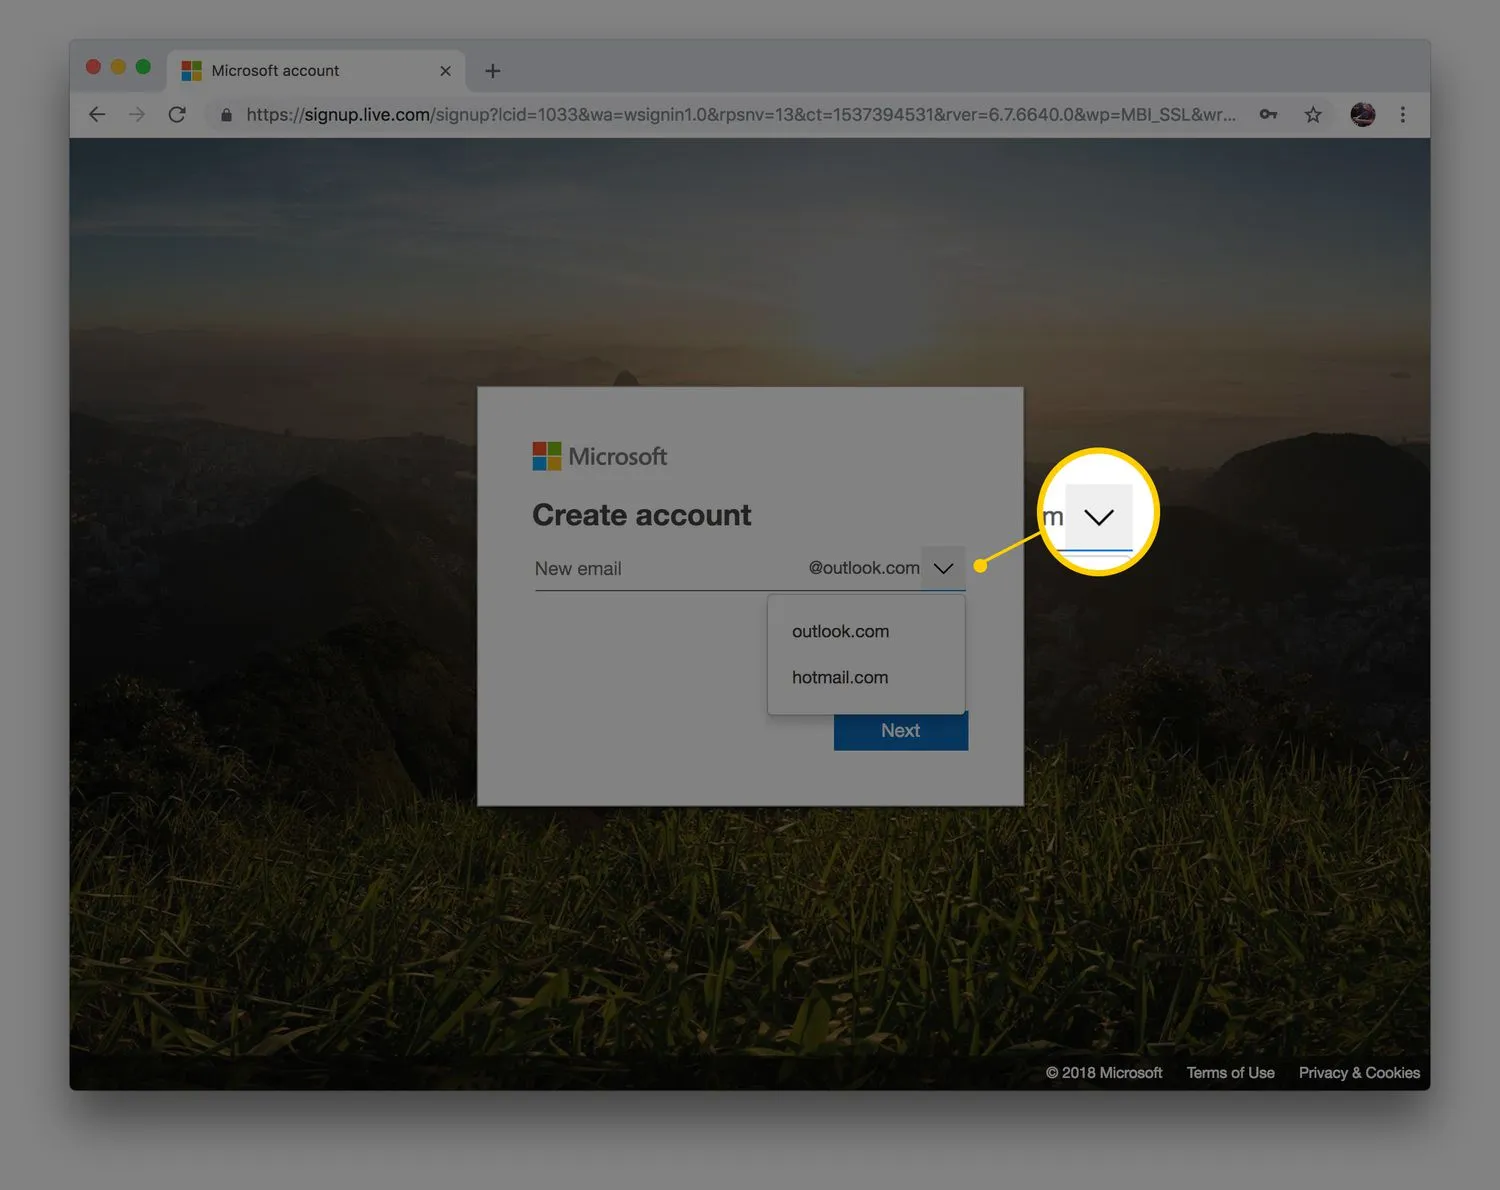 Outlook.com メール アカウントの Chrome Web ページにアカウント オプションを作成し、outlook と hotmail の選択肢を表示する